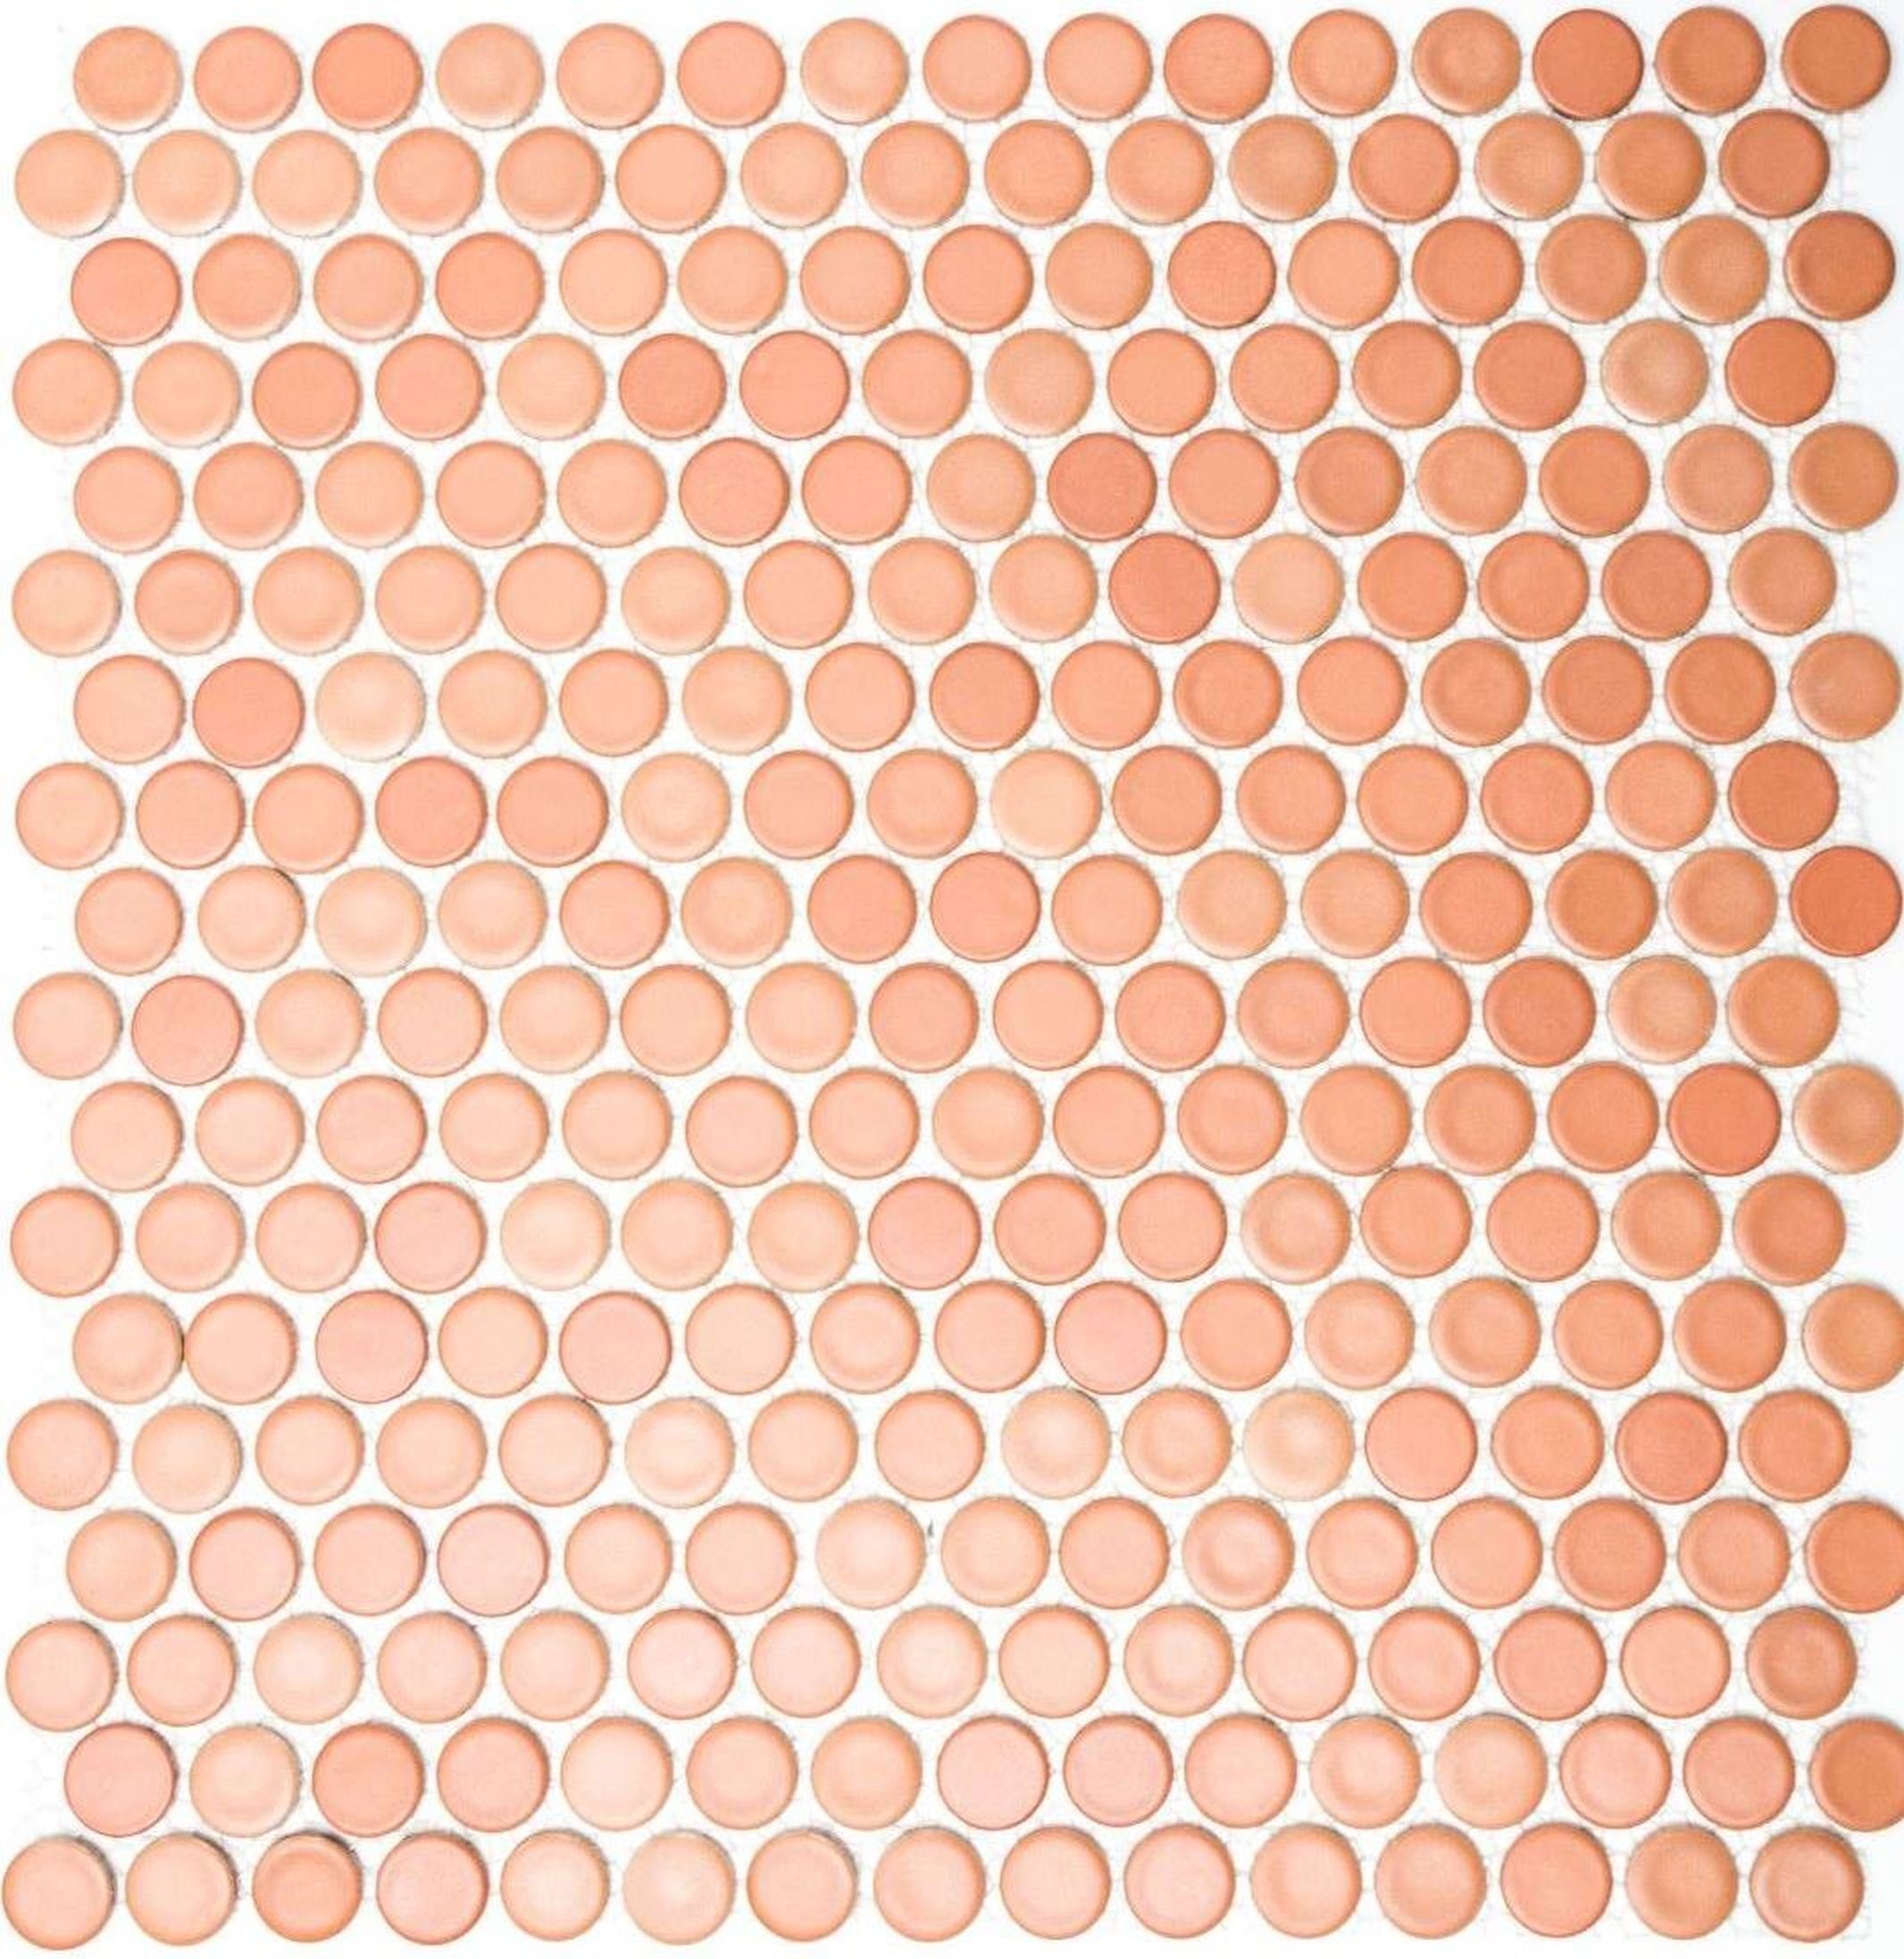 Mosani Mosaikfliesen Knopf Keramikmosaik Mosaikfliesen cotto matt / 10 Matten